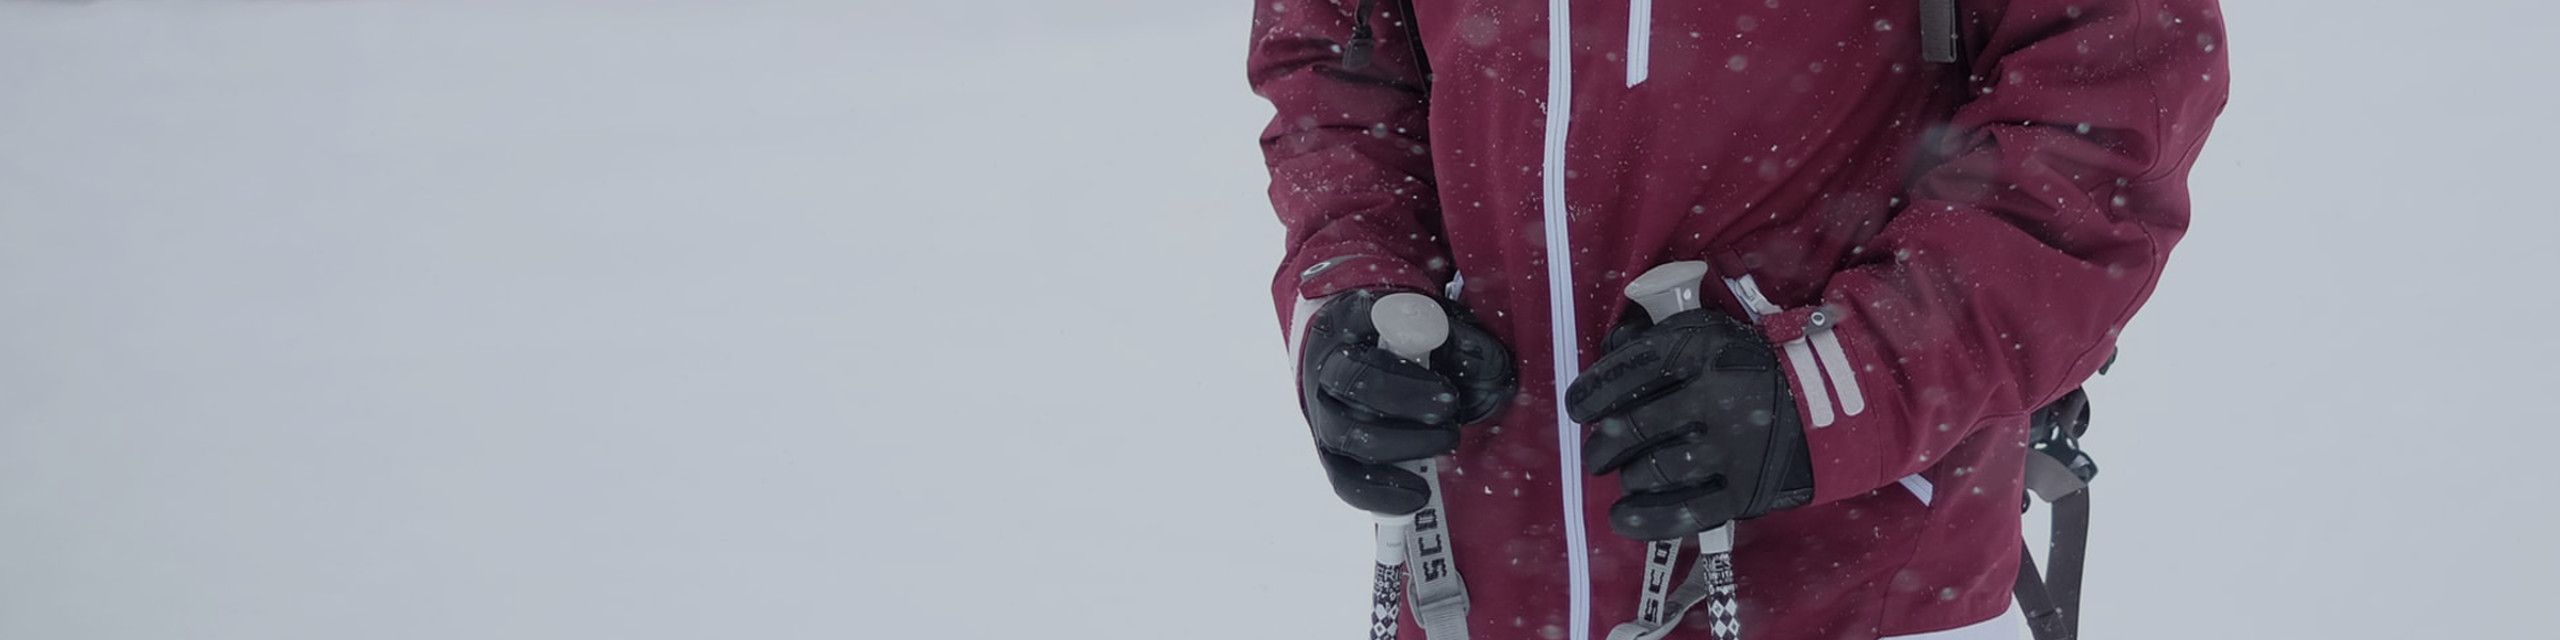 Gants et moufles de ski pour hommes